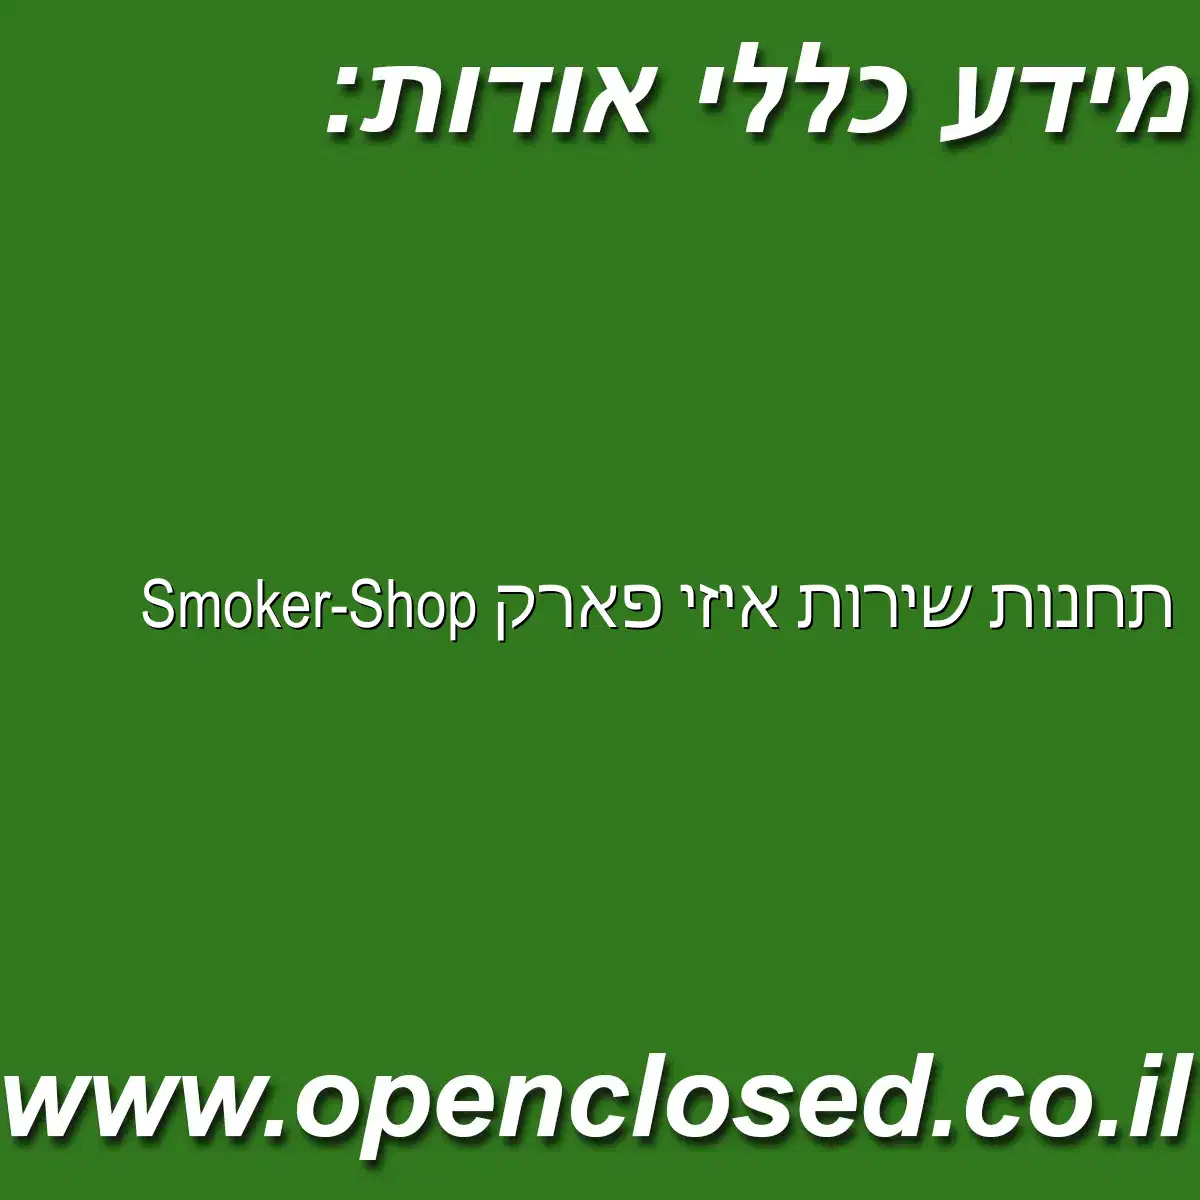 תחנות שירות איזי פארק Smoker-Shop